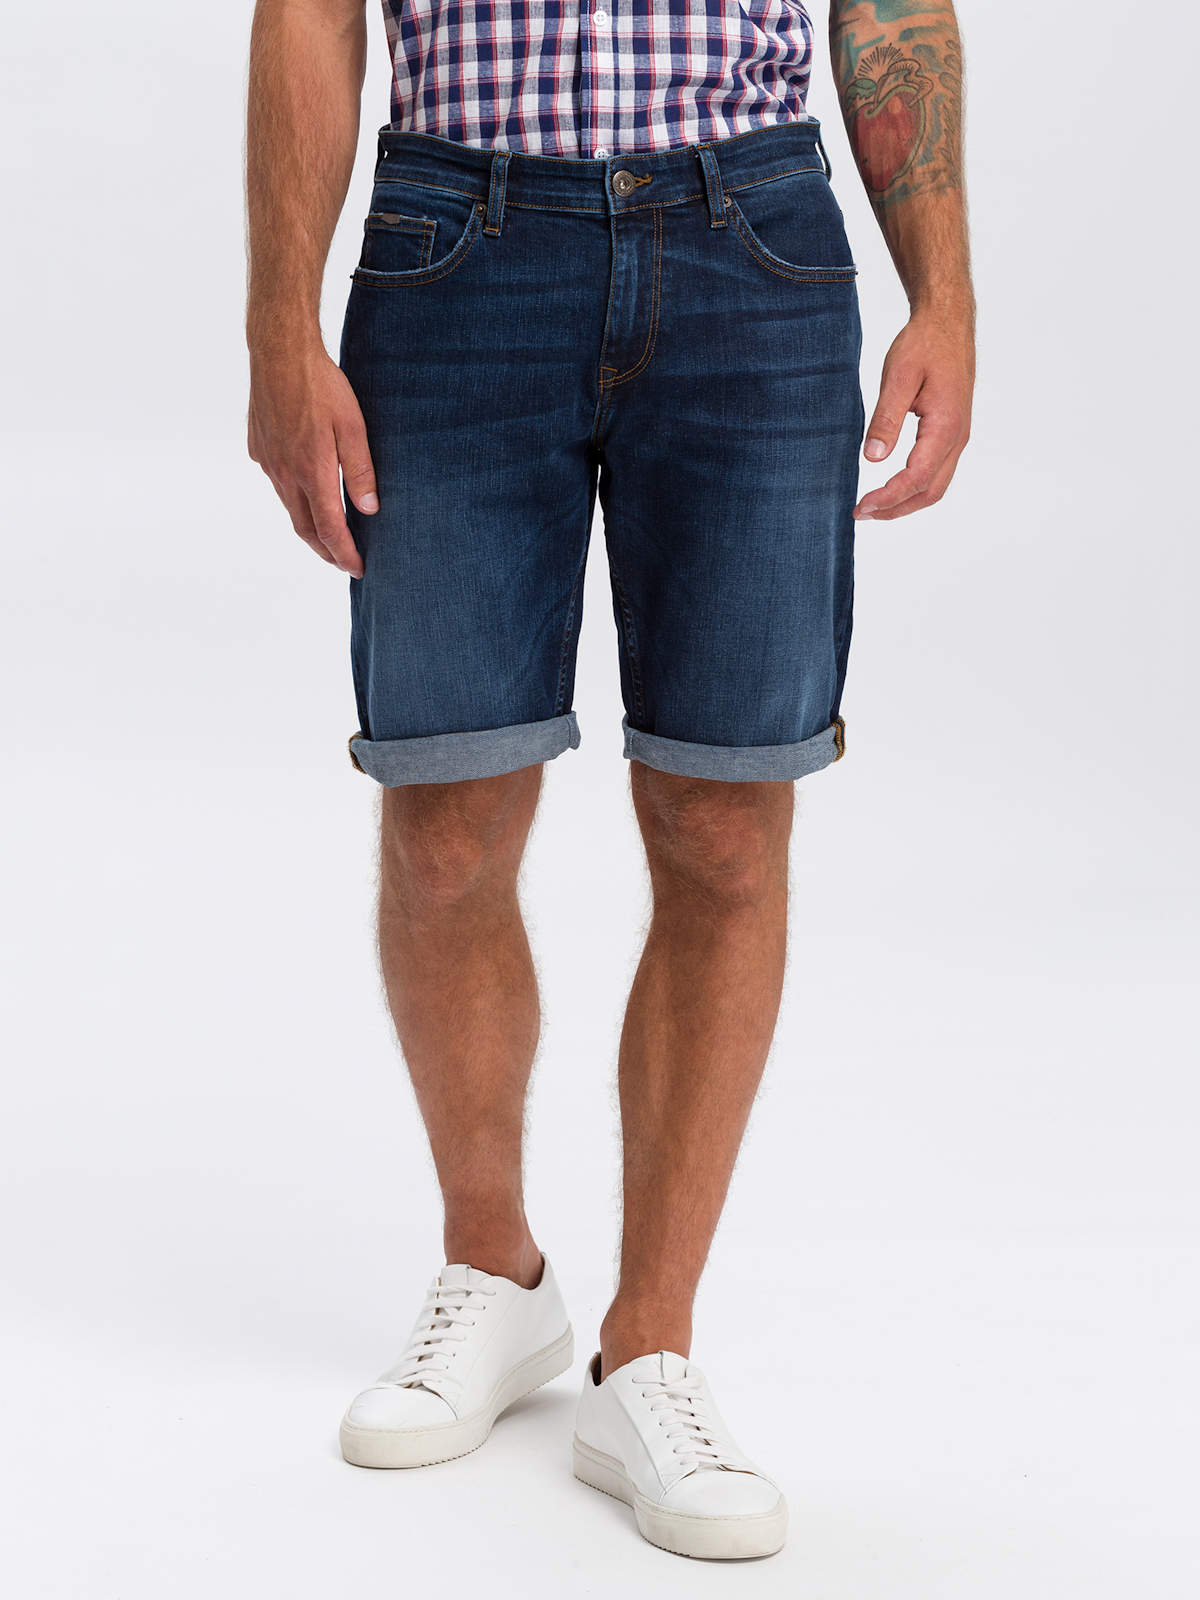 Джинсовые шорты мужские Cross Jeans A565-142 синие 40